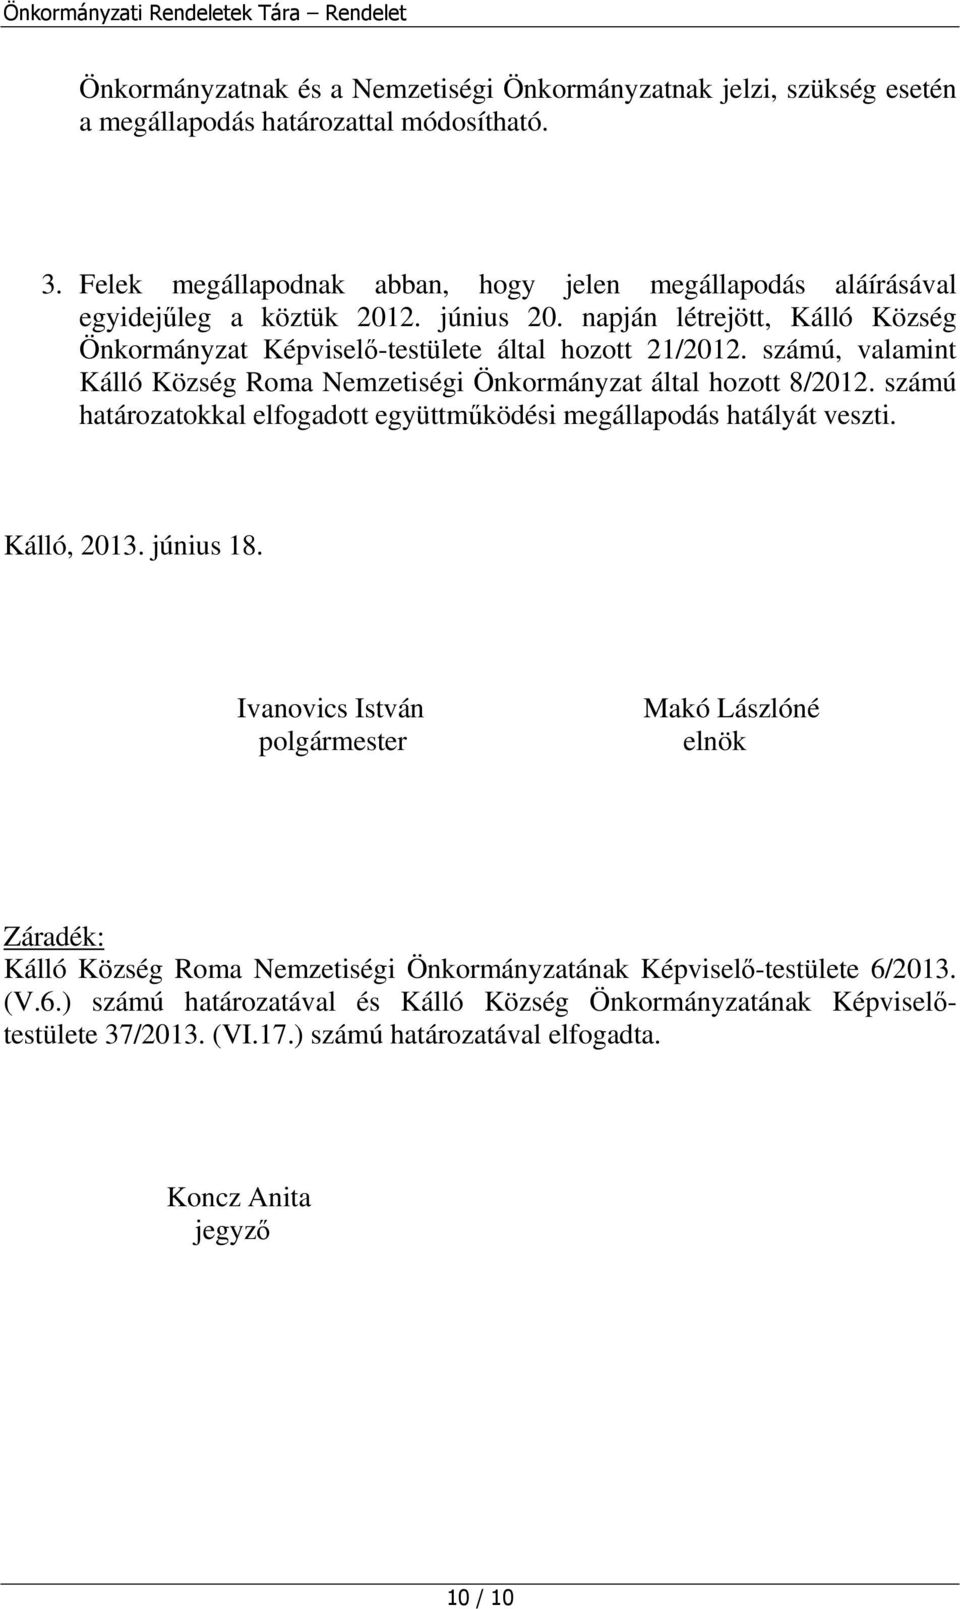 számú, valamint Kálló Község Roma Nemzetiségi Önkormányzat által hozott 8/2012. számú határozatokkal elfogadott együttműködési megállapodás hatályát veszti. Kálló, 2013. június 18.